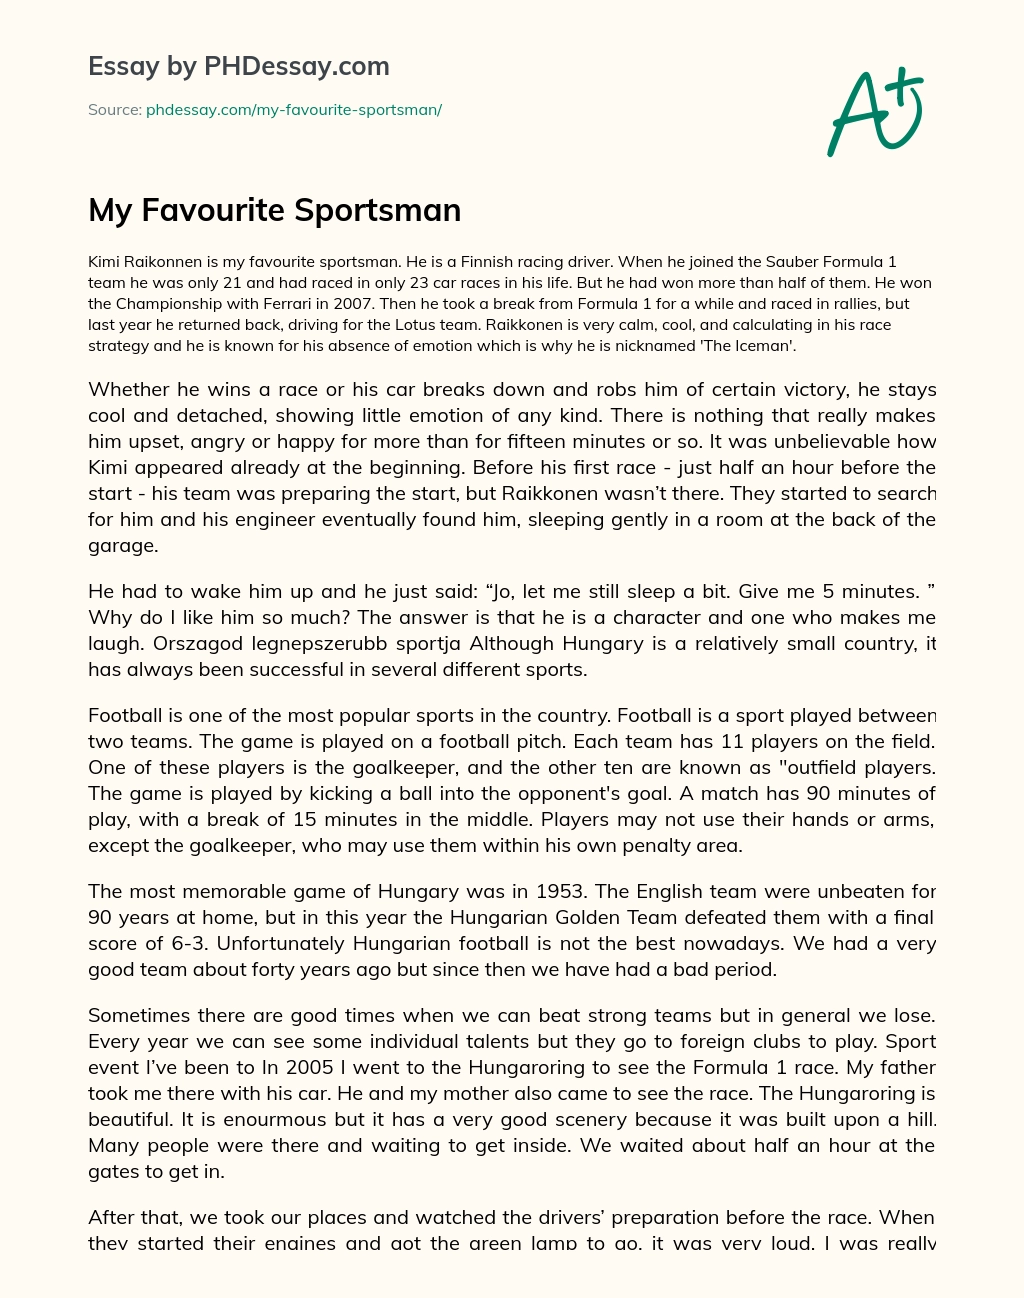 sportsman essay in english